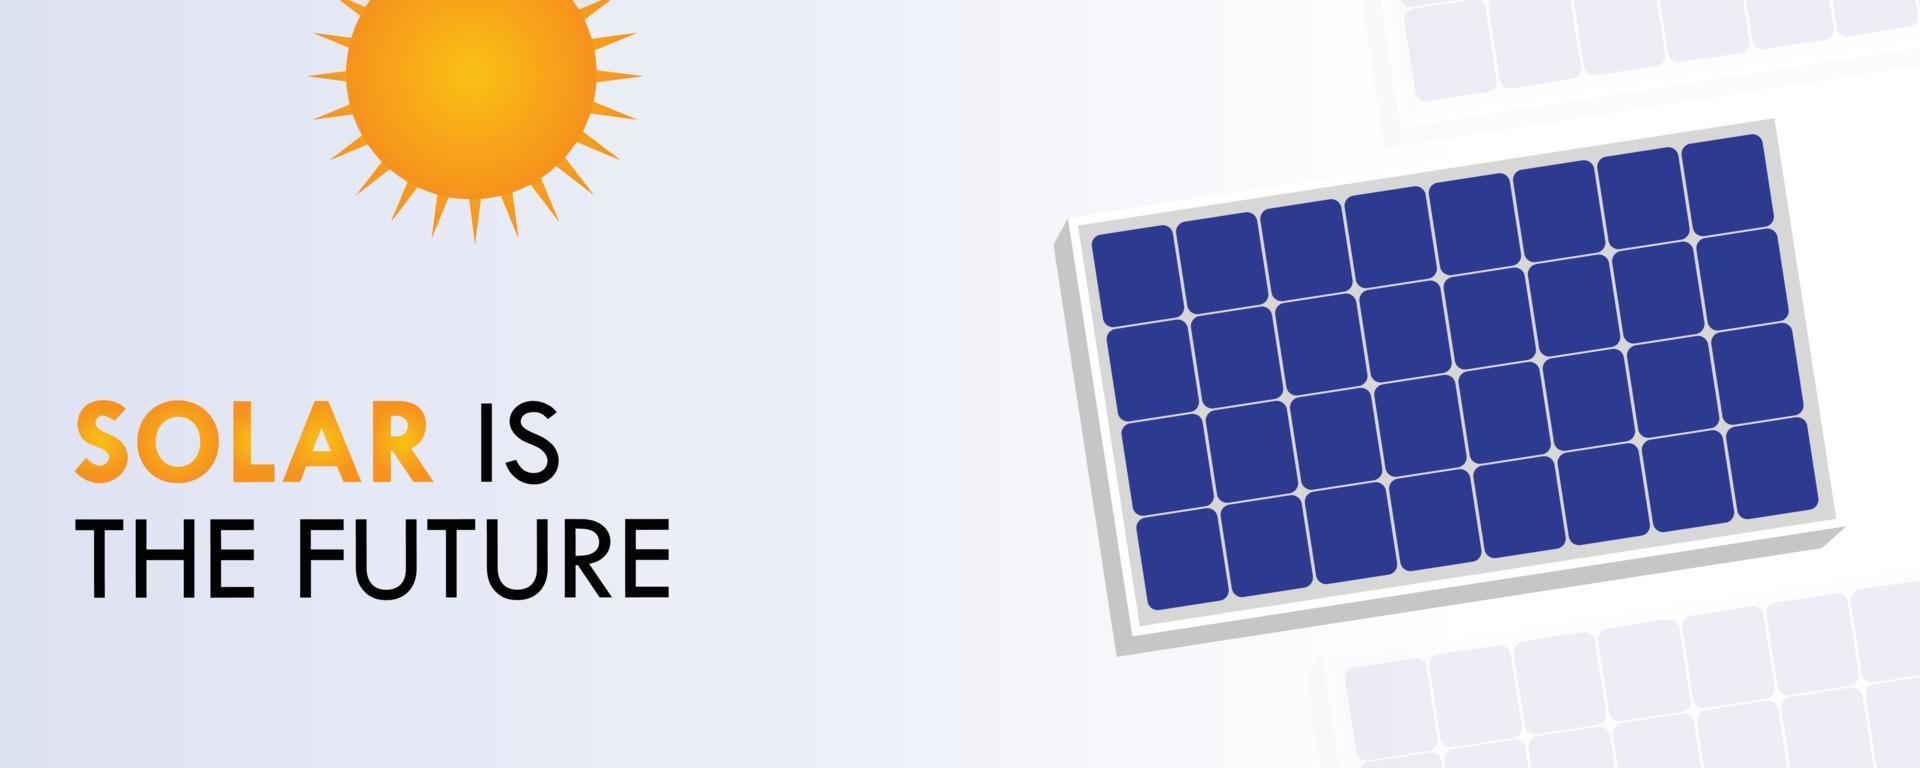 solar é a ilustração do futuro painel solar sol limpo eletricidade verde energia renovável luz solar indústria de energia natureza inovadora ambiente energético mensagem banner infográfico modelo vetor